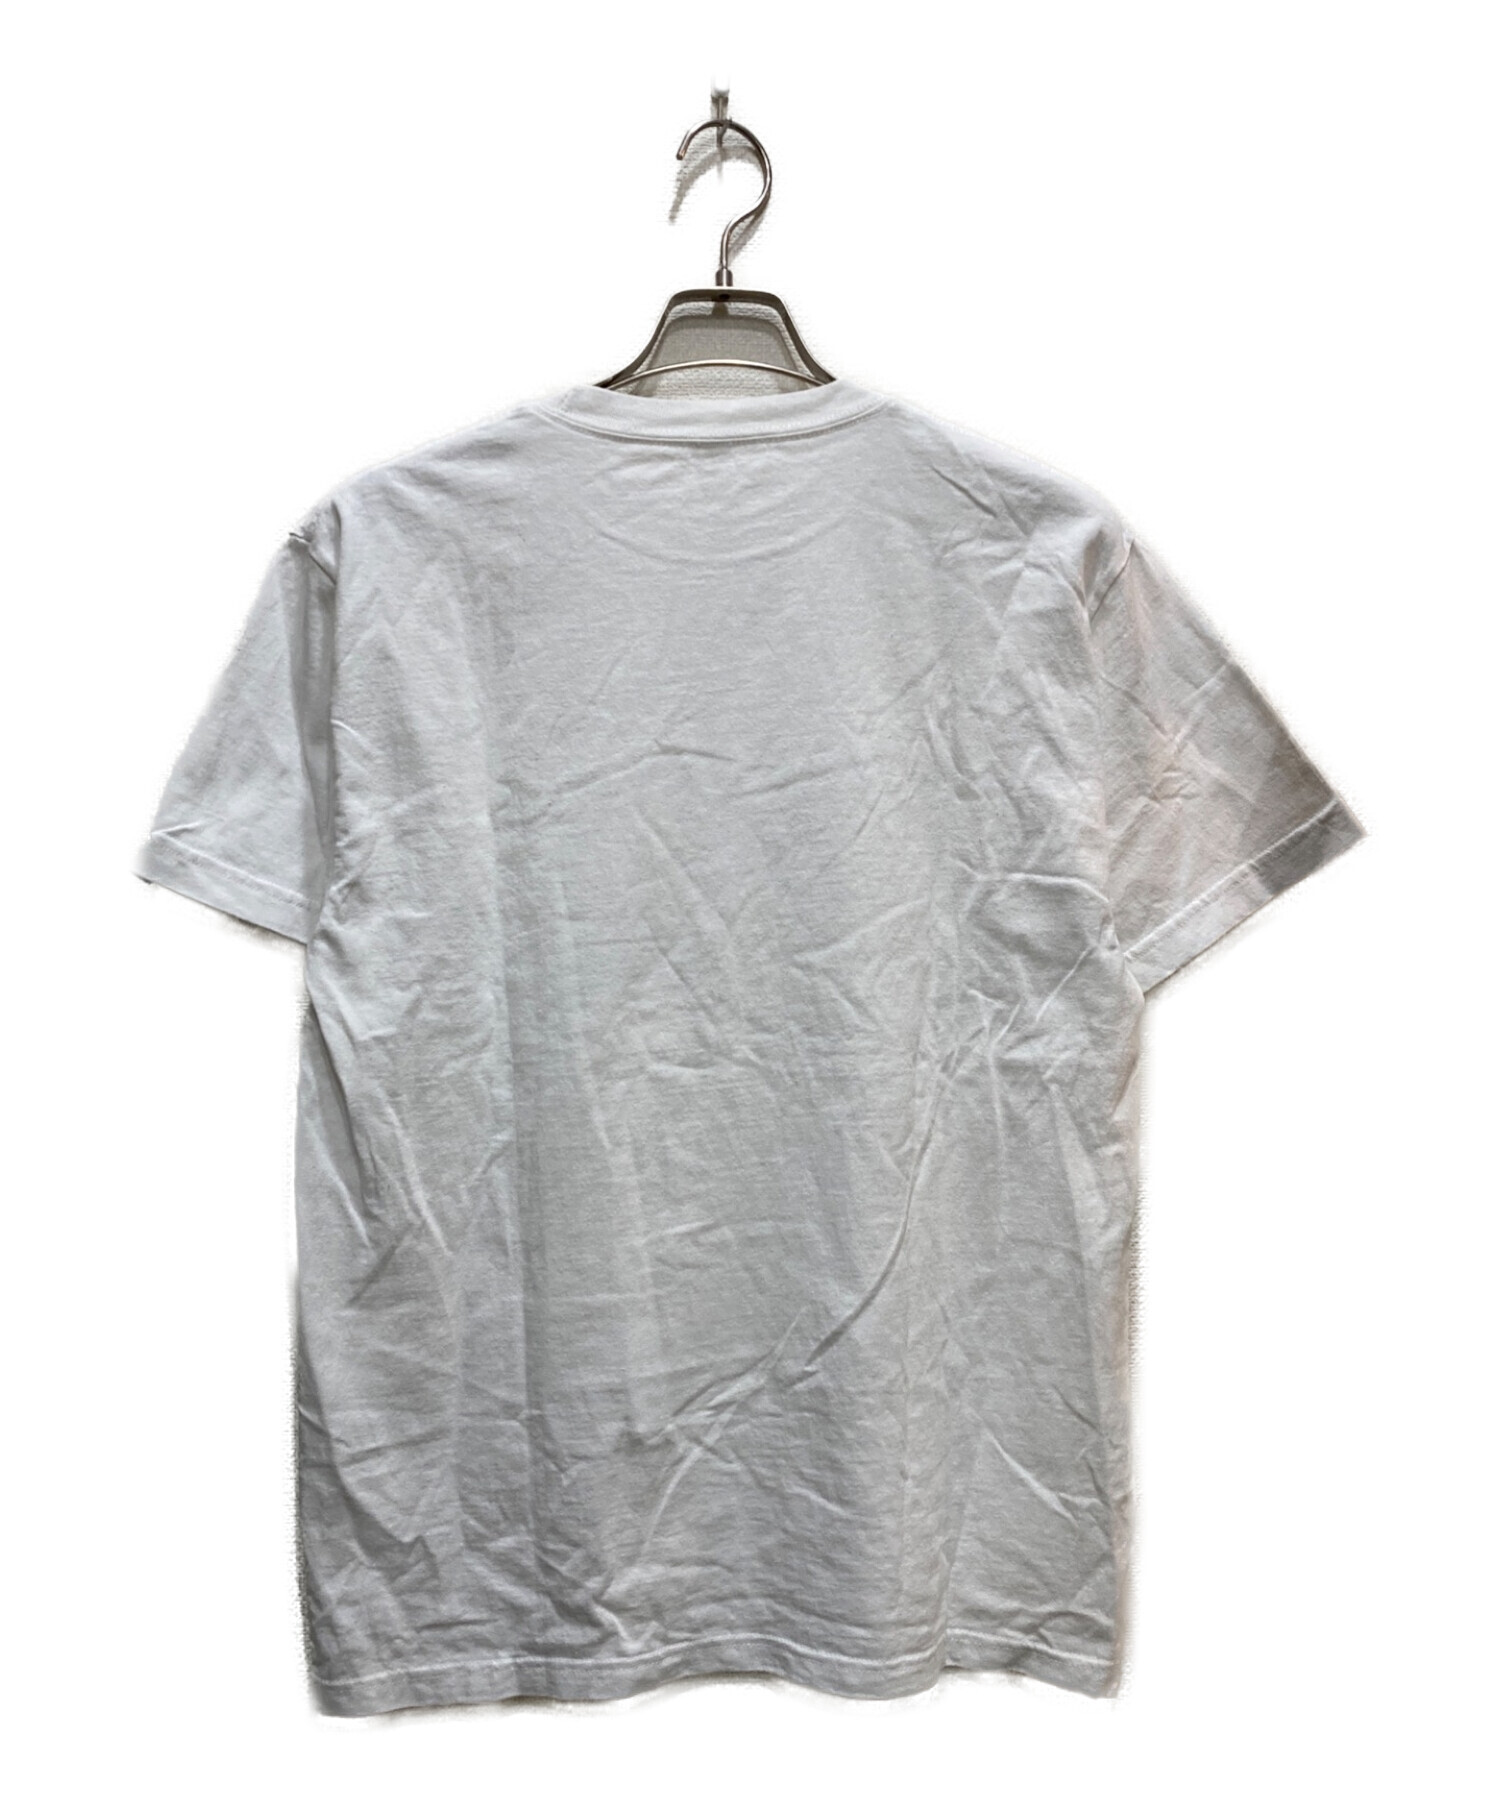 ENNOY (エンノイ) 加賀美健 アルスタイル エレクトリック ロゴ Tシャツ ホワイト サイズ:M